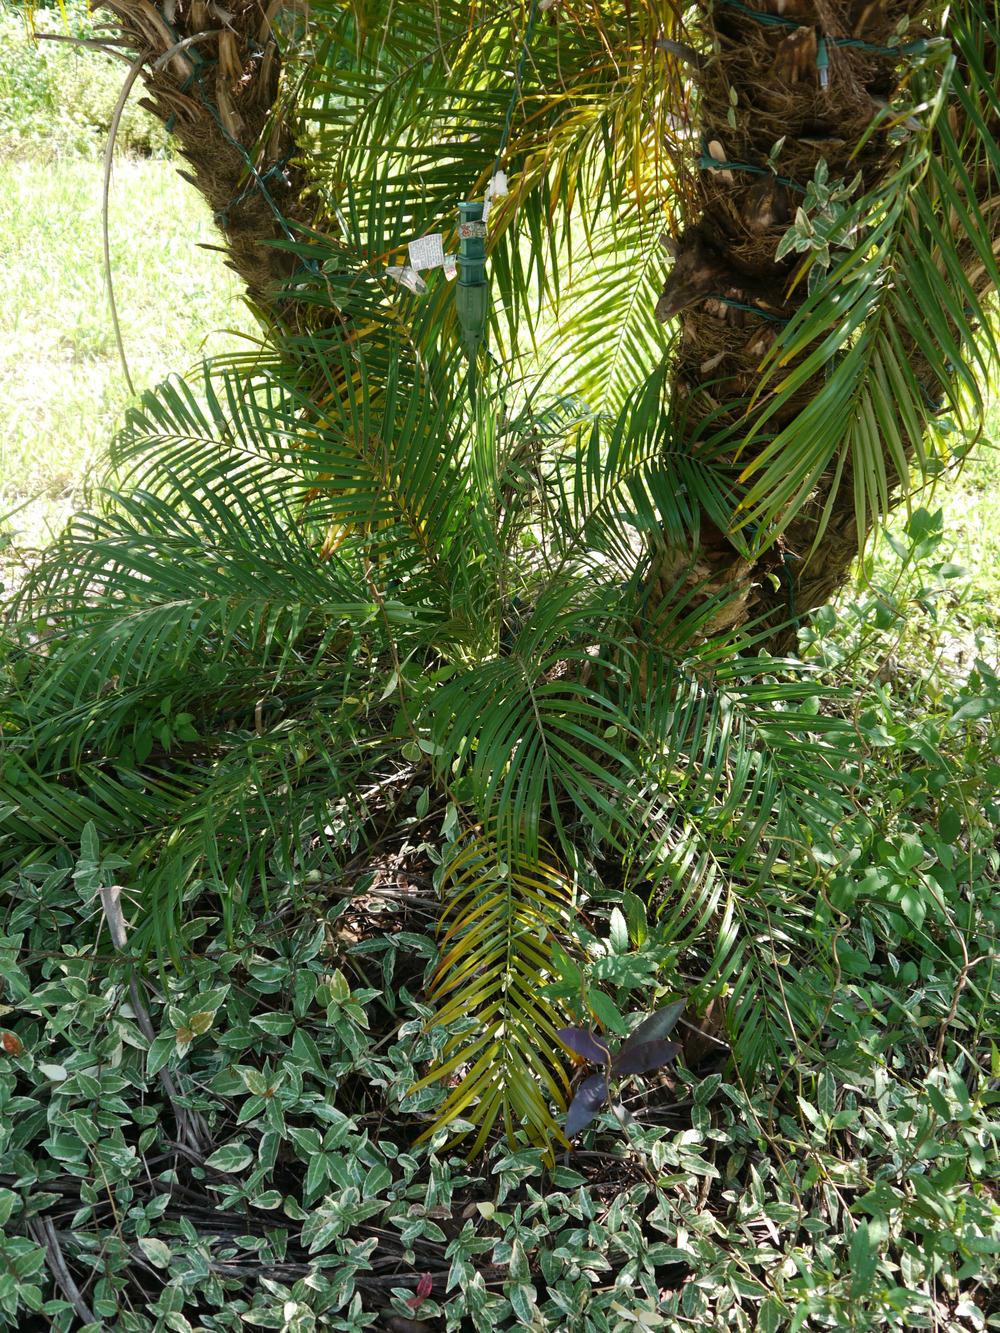 Photo of Pygmy Date Palm (Phoenix roebelenii) uploaded by dyzzypyxxy